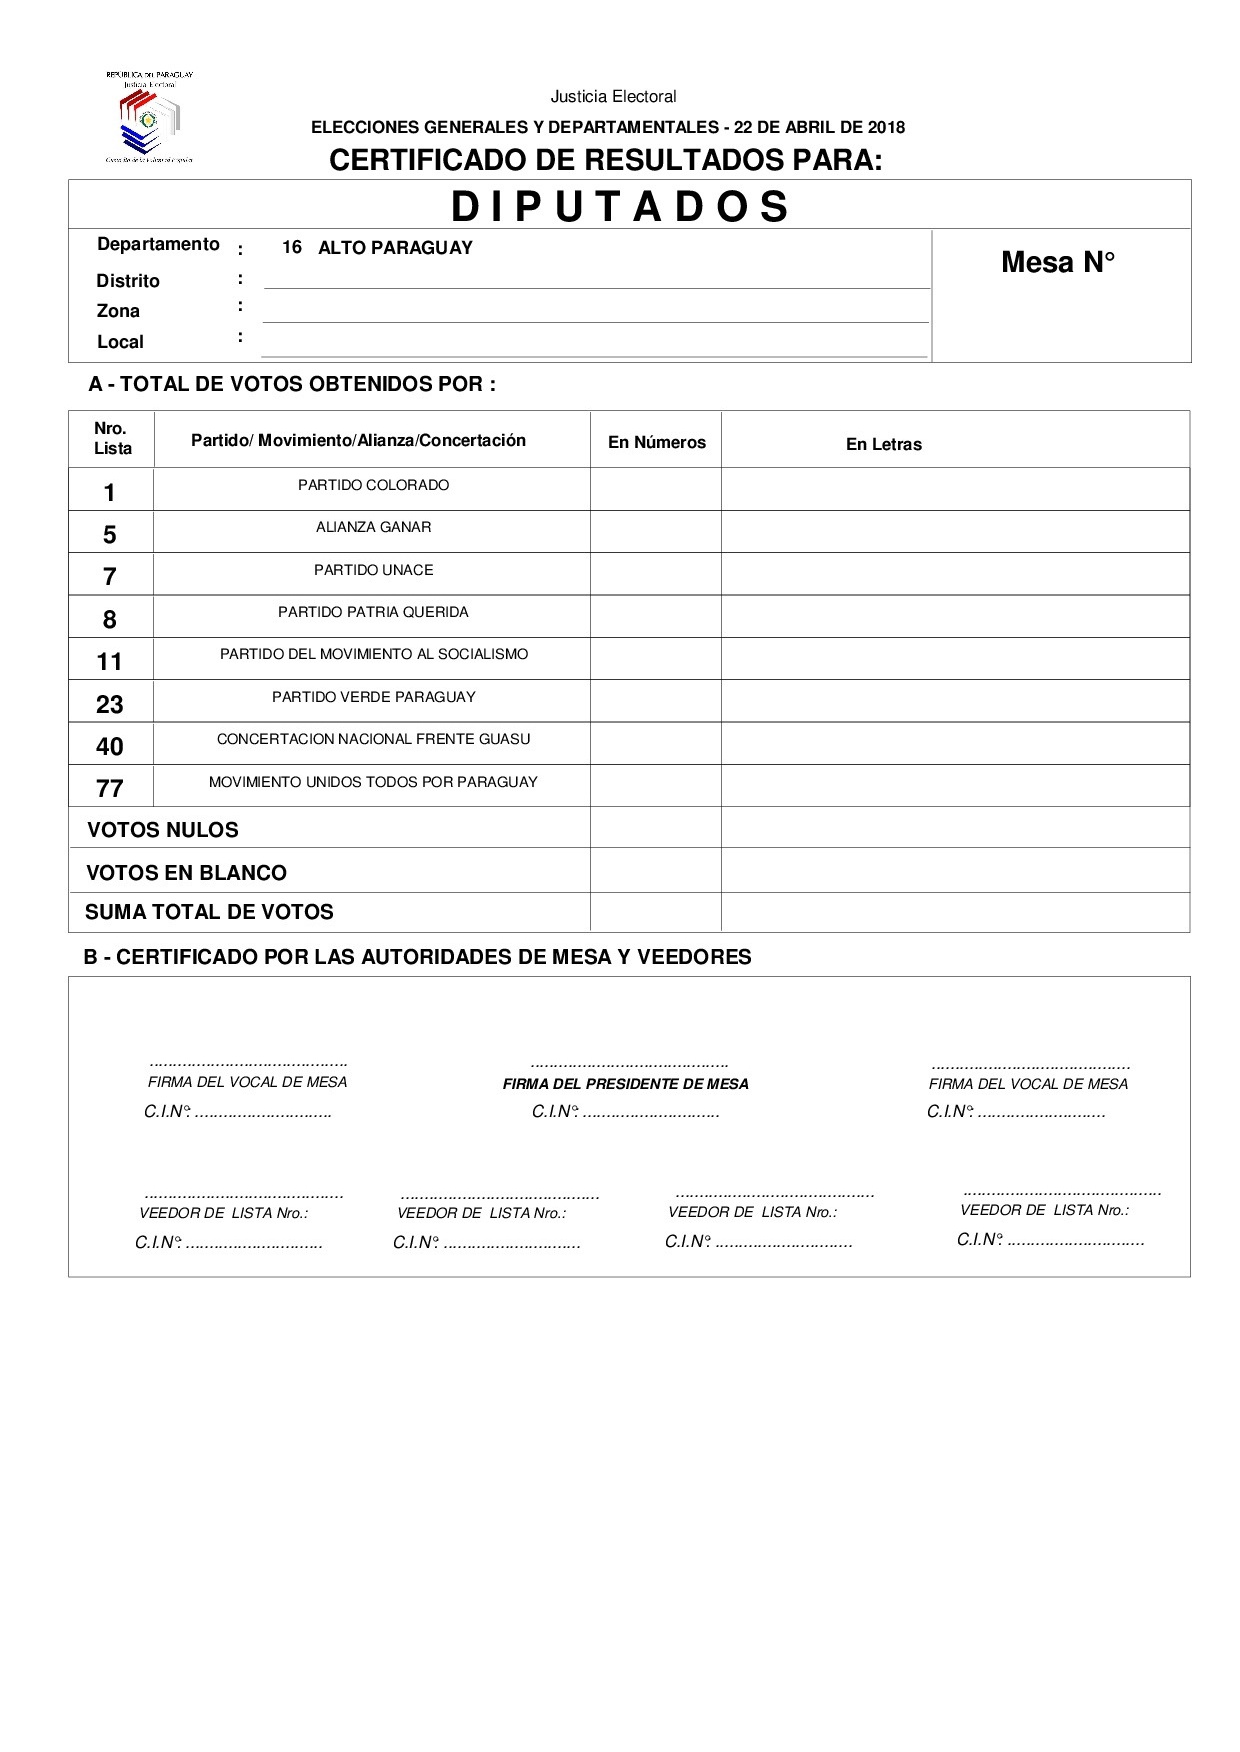 Certificado de Resultados Para Diputados de ALTO PARAGUAY